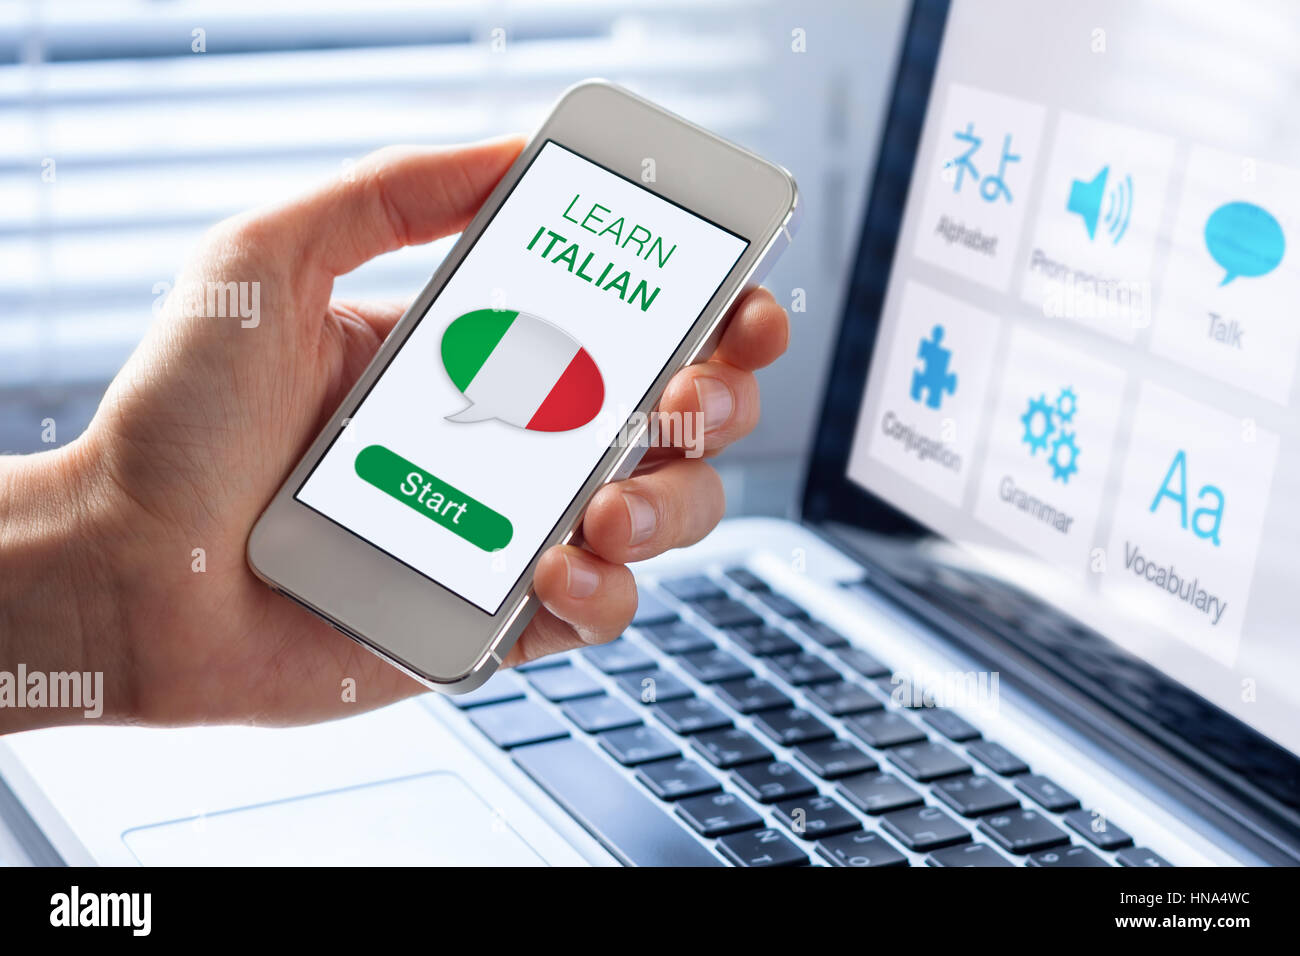 Apprendre la langue italienne concept en ligne avec une personne montrant l'e-learning application sur téléphone mobile avec le drapeau de l'Italie Banque D'Images